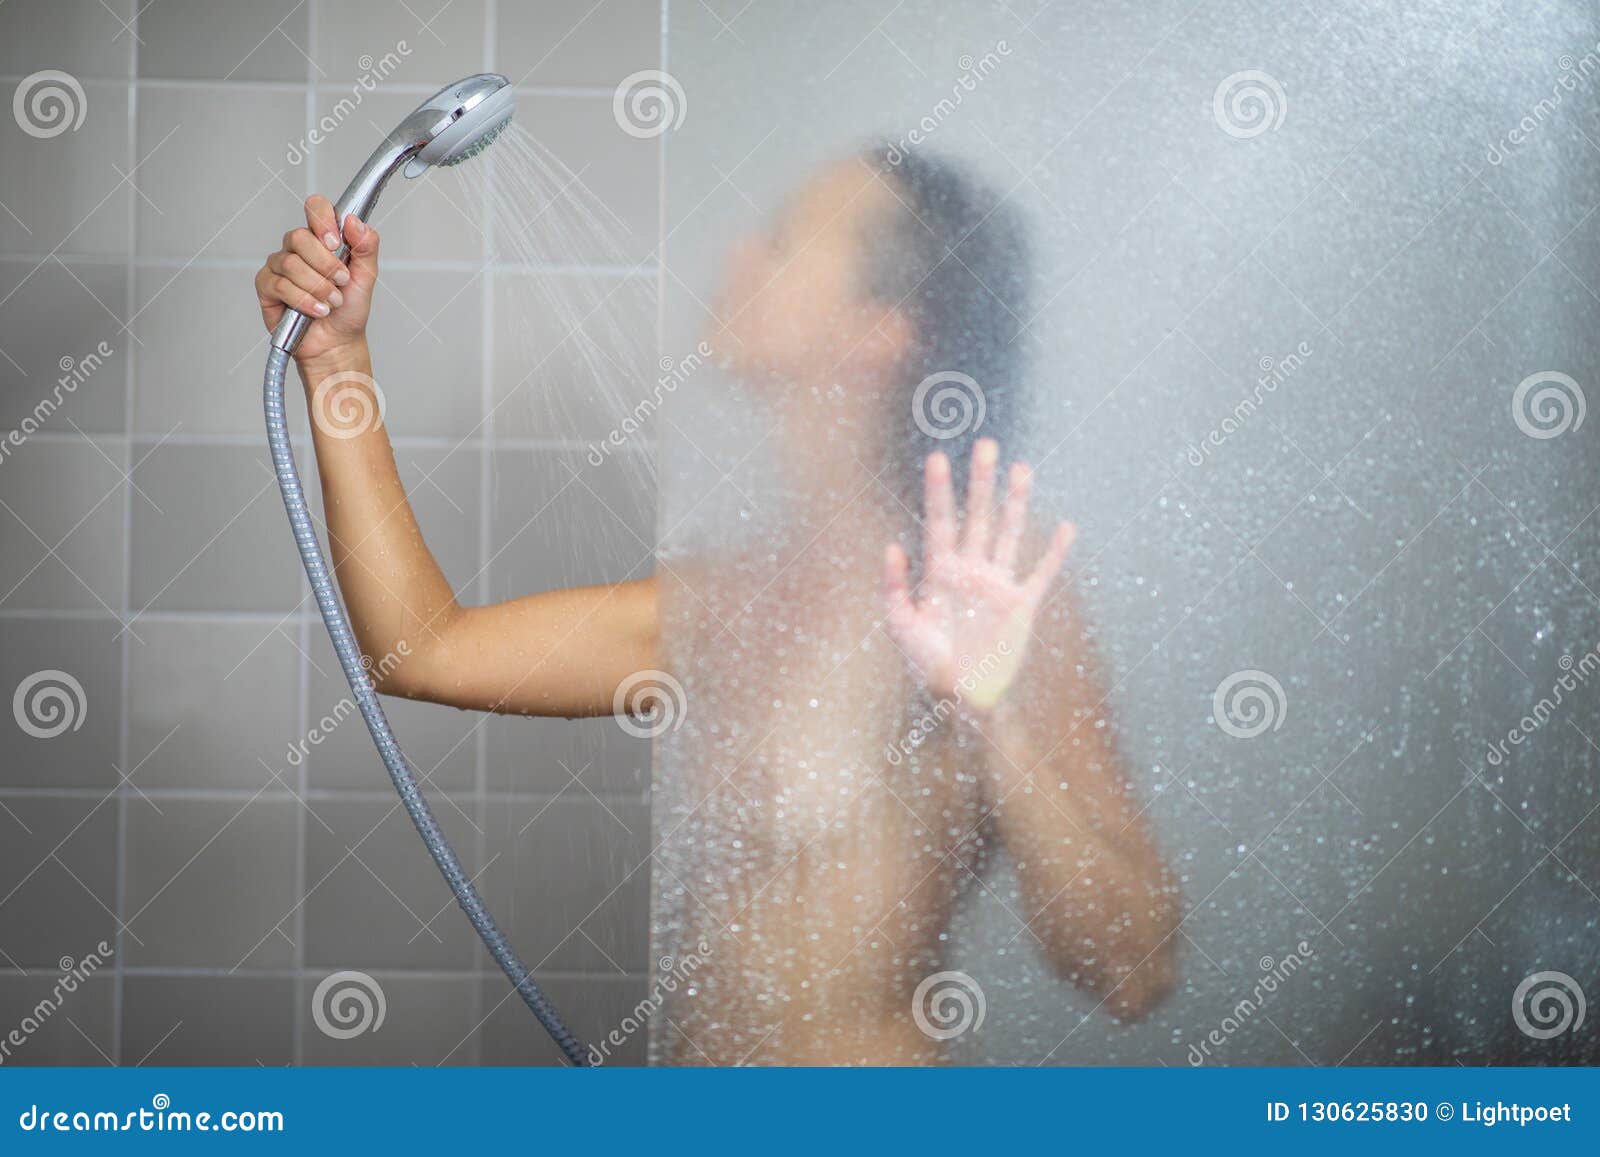 Girl In Shower Pic